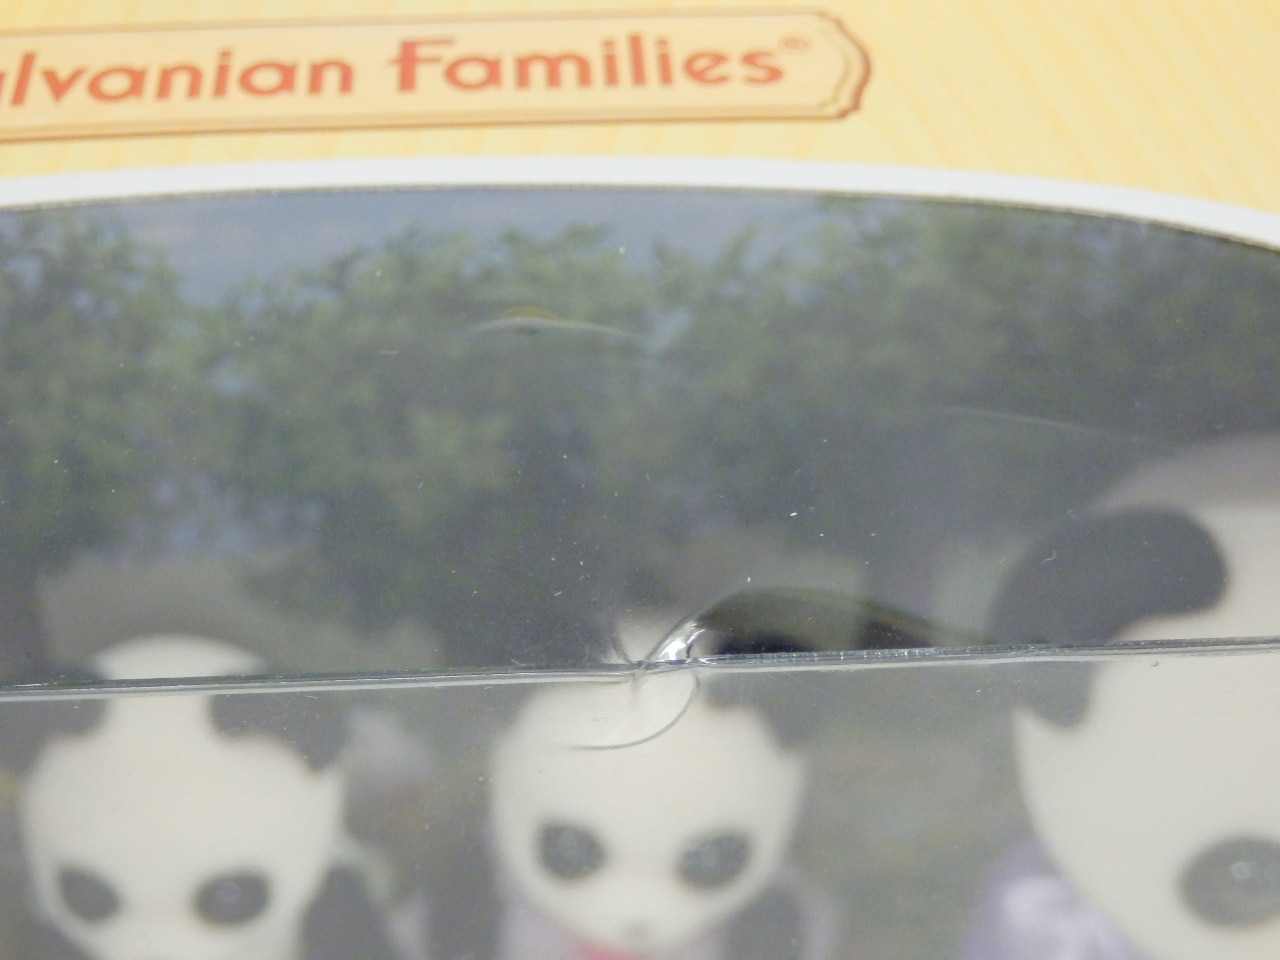 Sylvanian Family Doll Panda Family FS-39